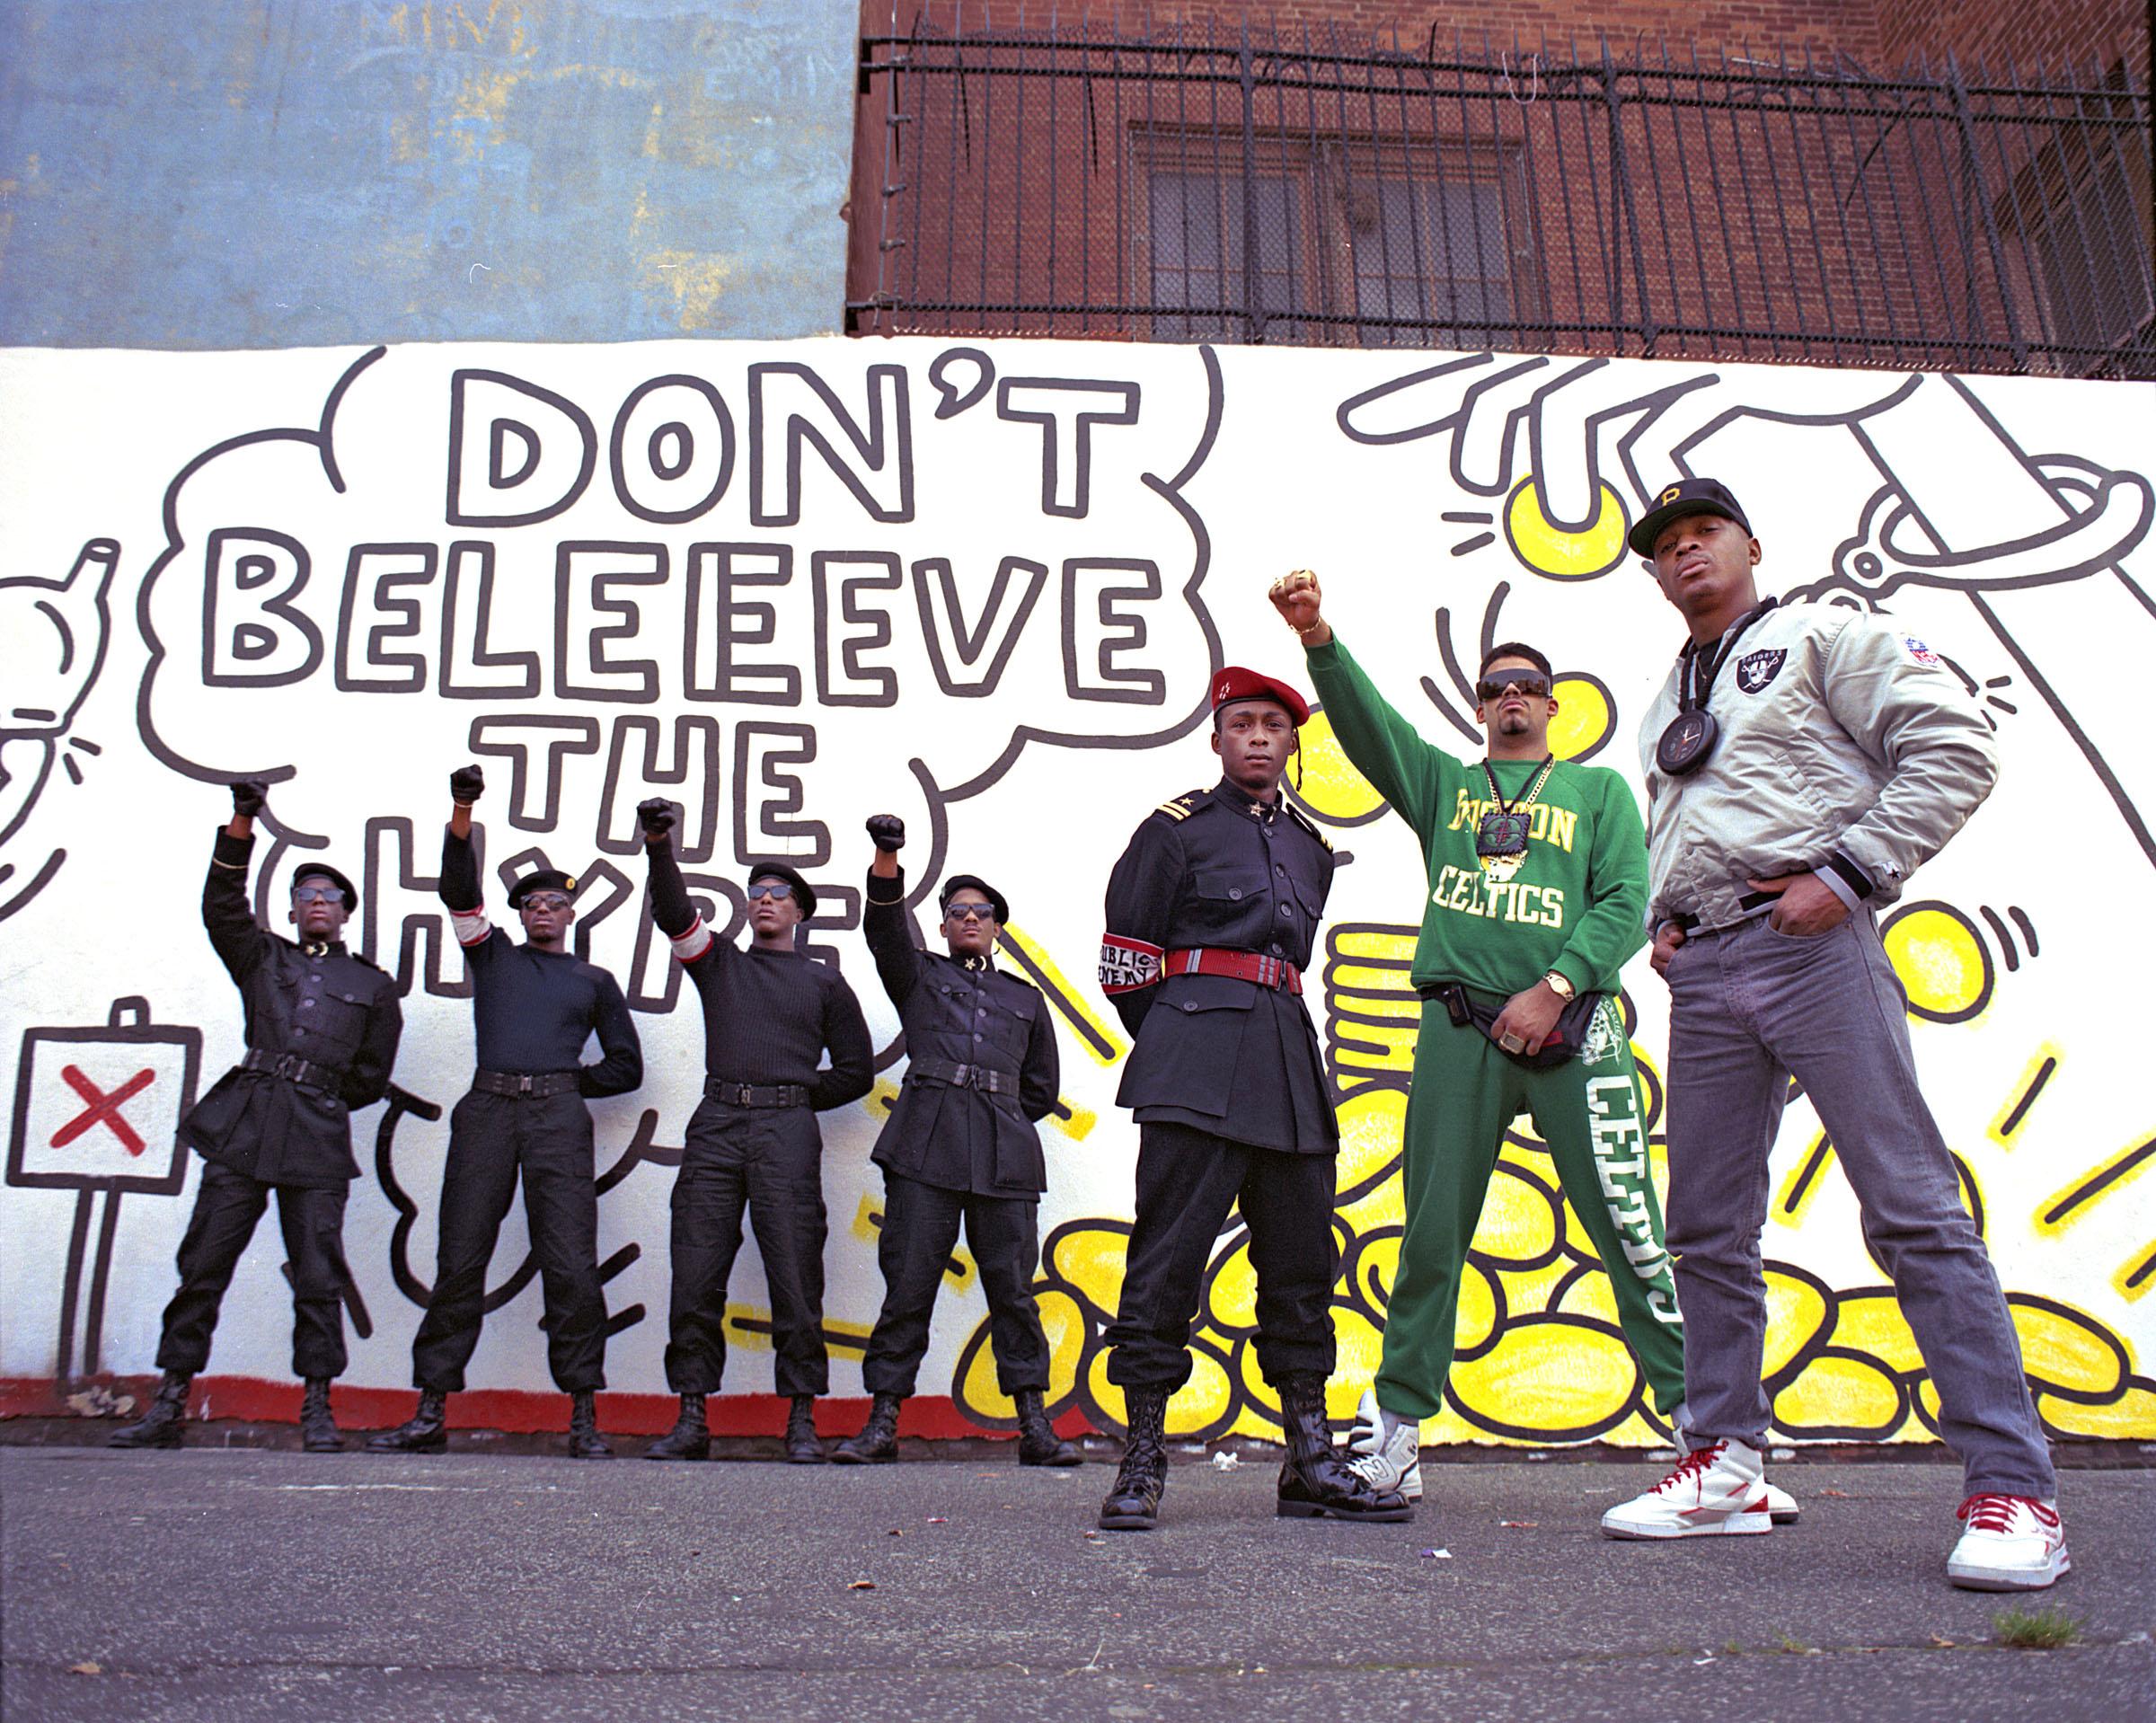 Jack Mitchell Color Photograph - Public Enemy 'Don't Believe the Hype', Color 17 x 22" Exhibition Photograph